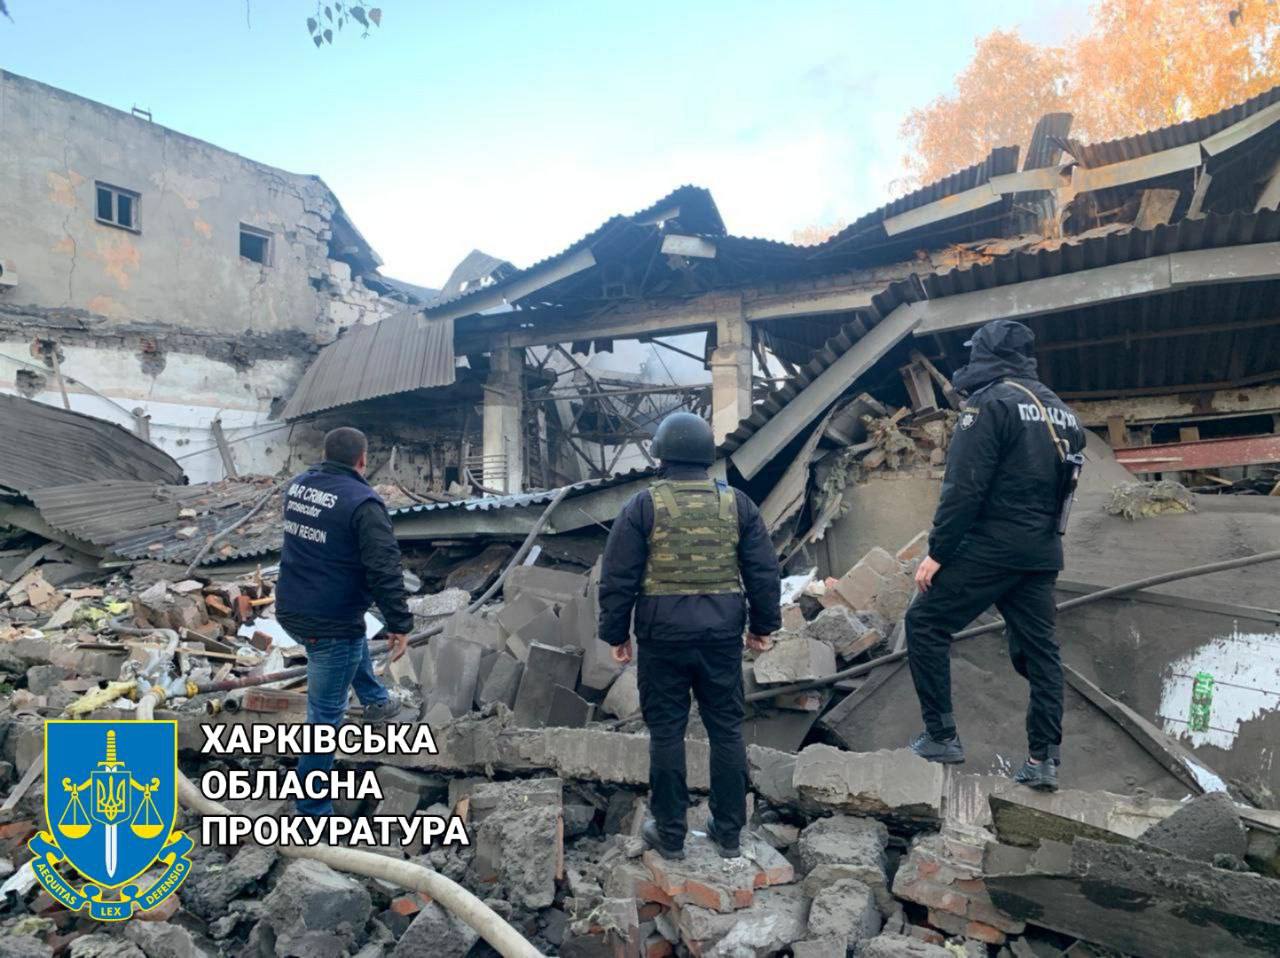 фото последствий ударов по объекту критической инфраструктуры в Харькове